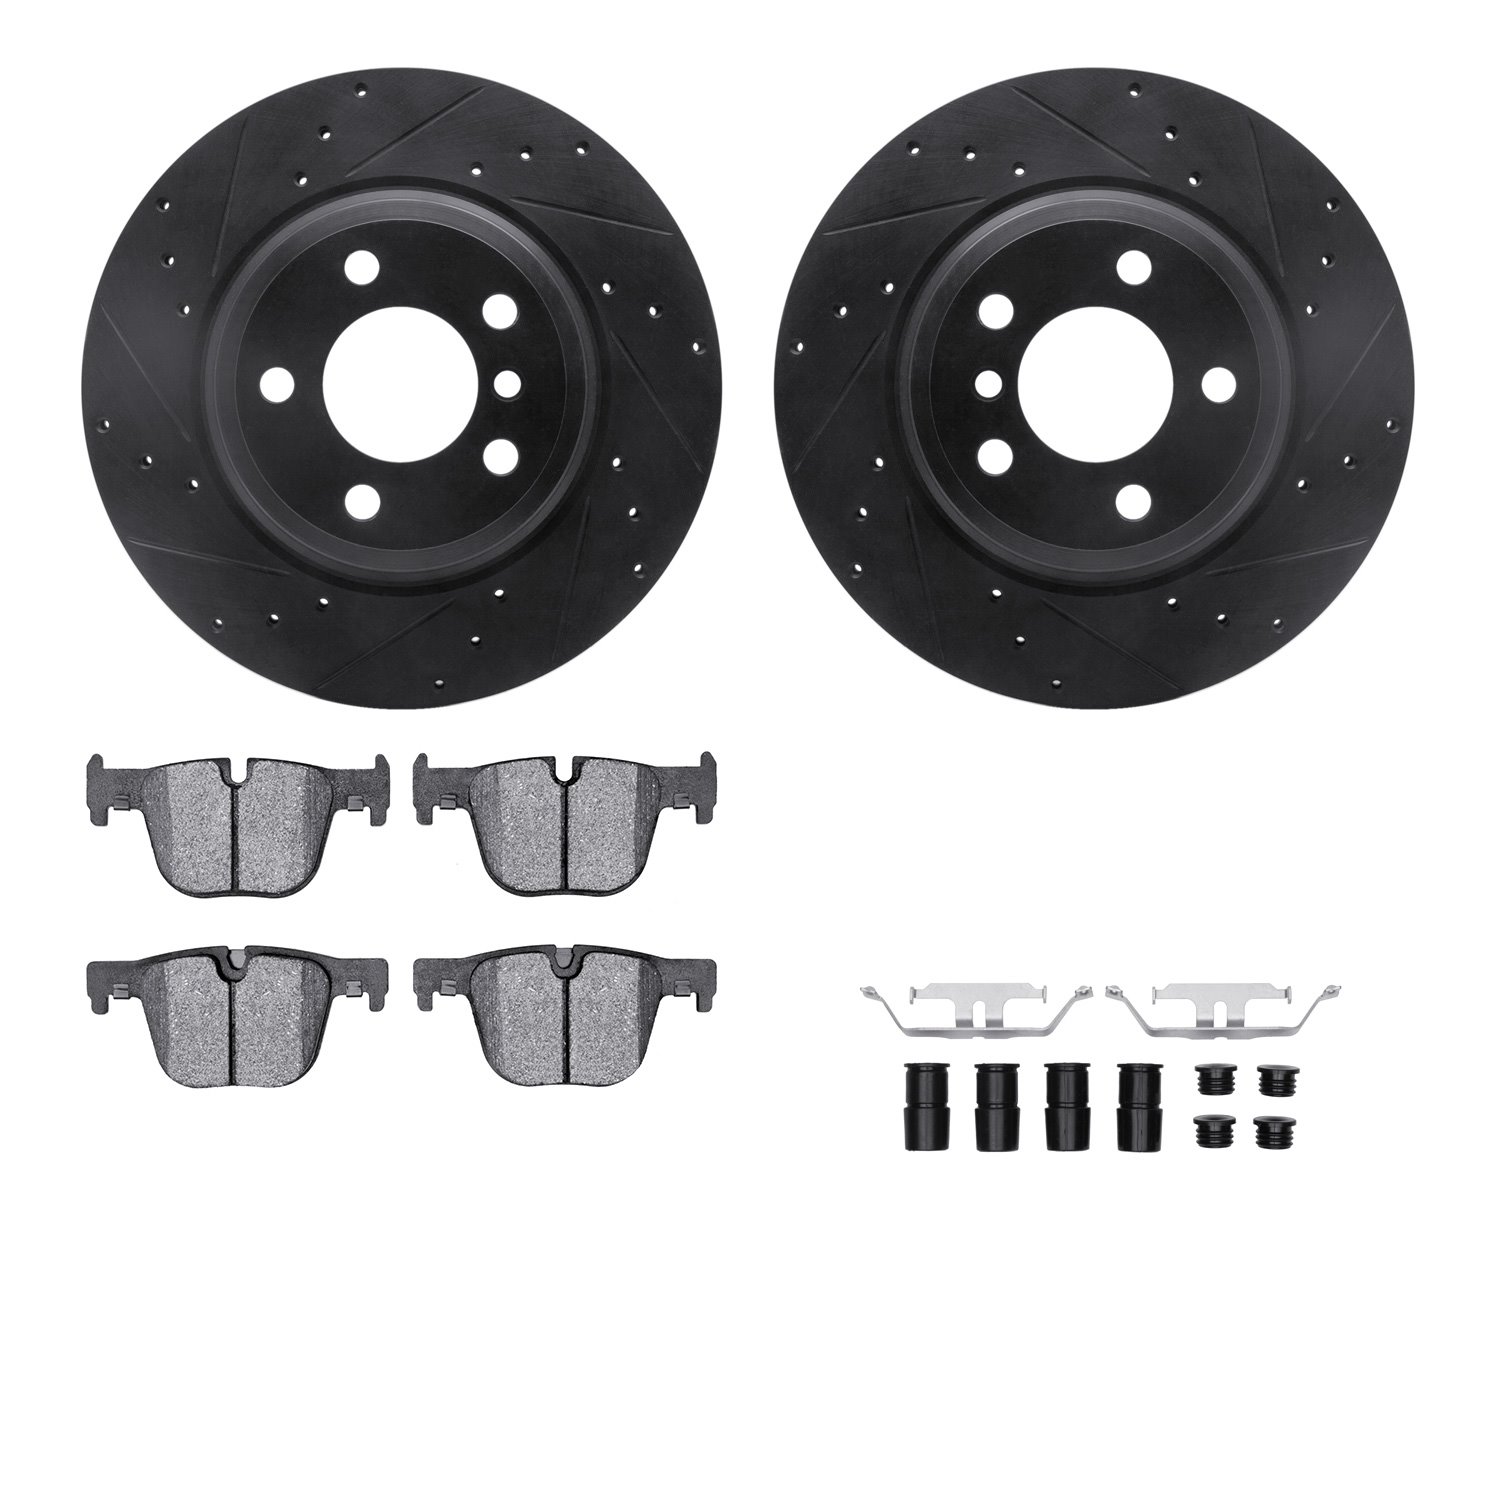 8612-31095 Drilled/Slotted Brake Rotors w/5000 Euro Ceramic Brake Pads Kit & Hardware [Black], 2014-2015 BMW, Position: Rear